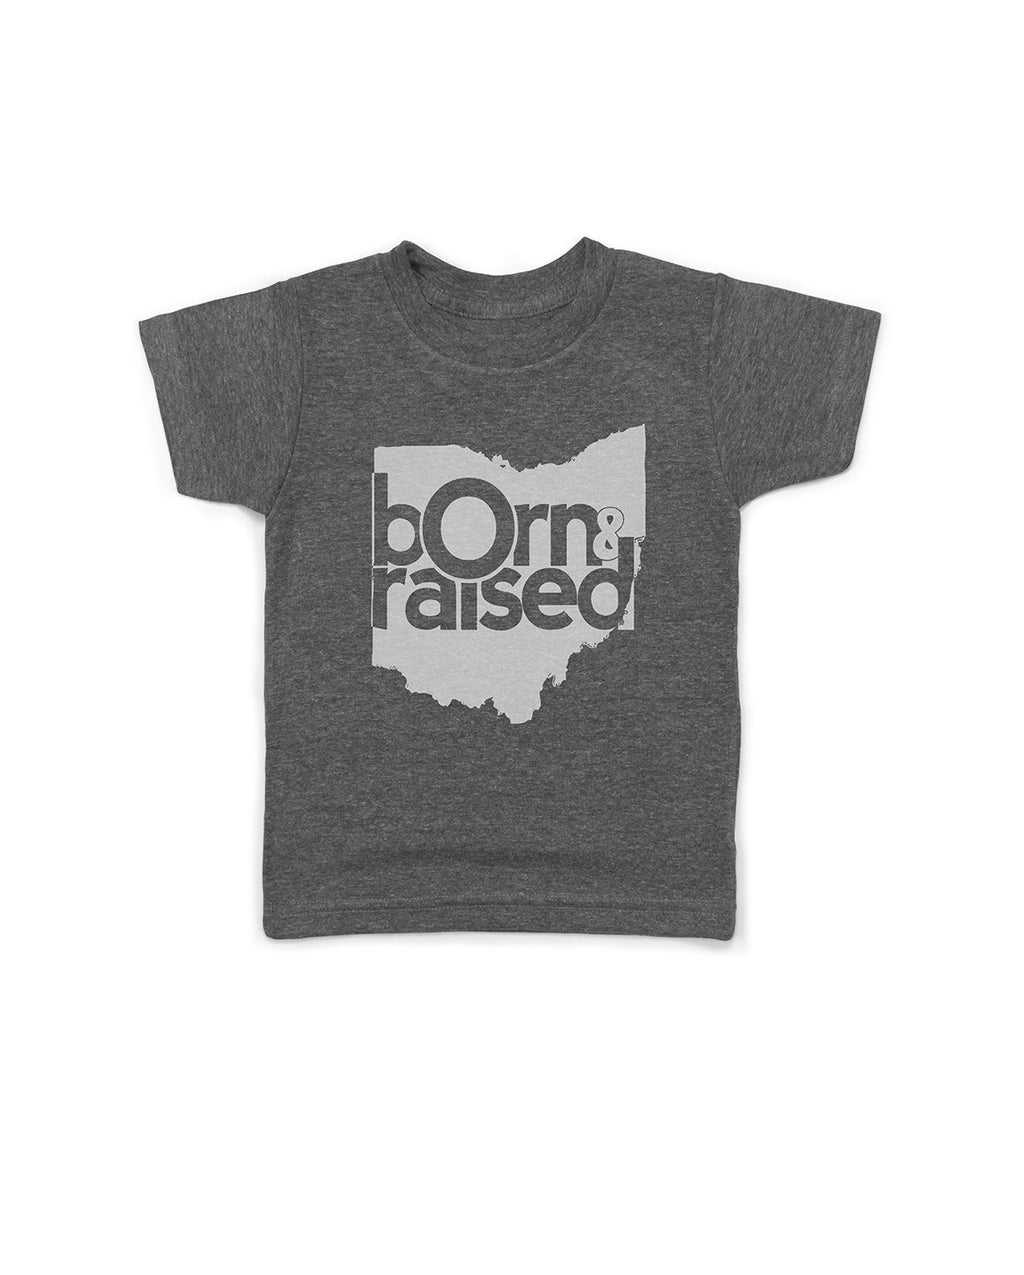 Kids | Ohio: Born & Raised Remix - Originalitees